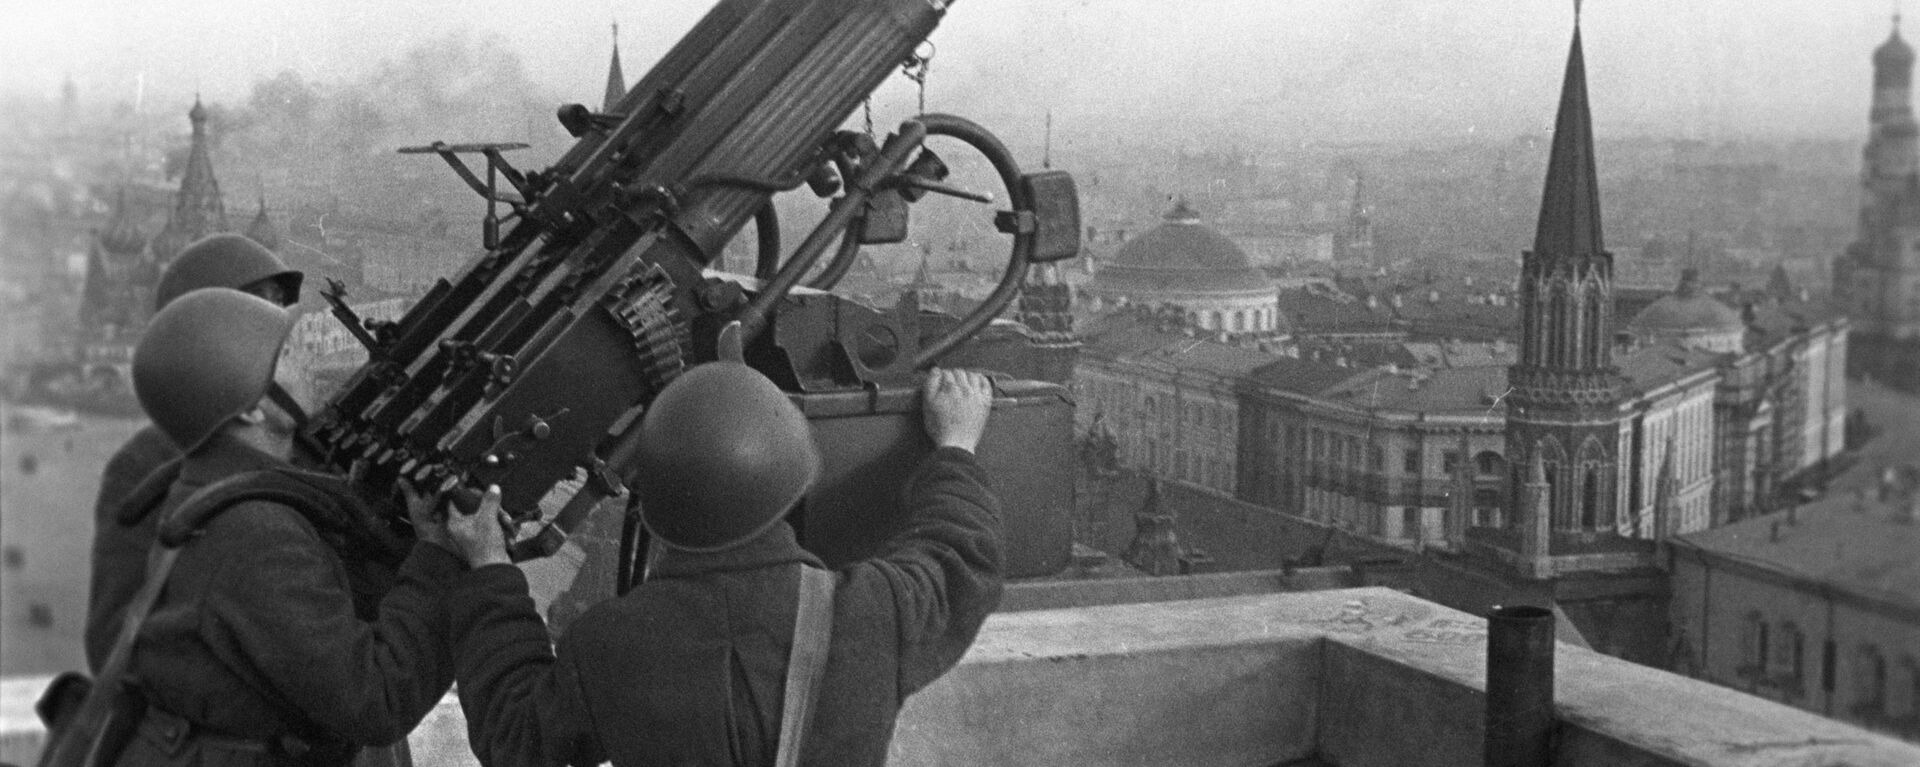 Советские зенитчики на крыше гостиницы Москва, 1941 год - Sputnik Казахстан, 1920, 30.09.2021